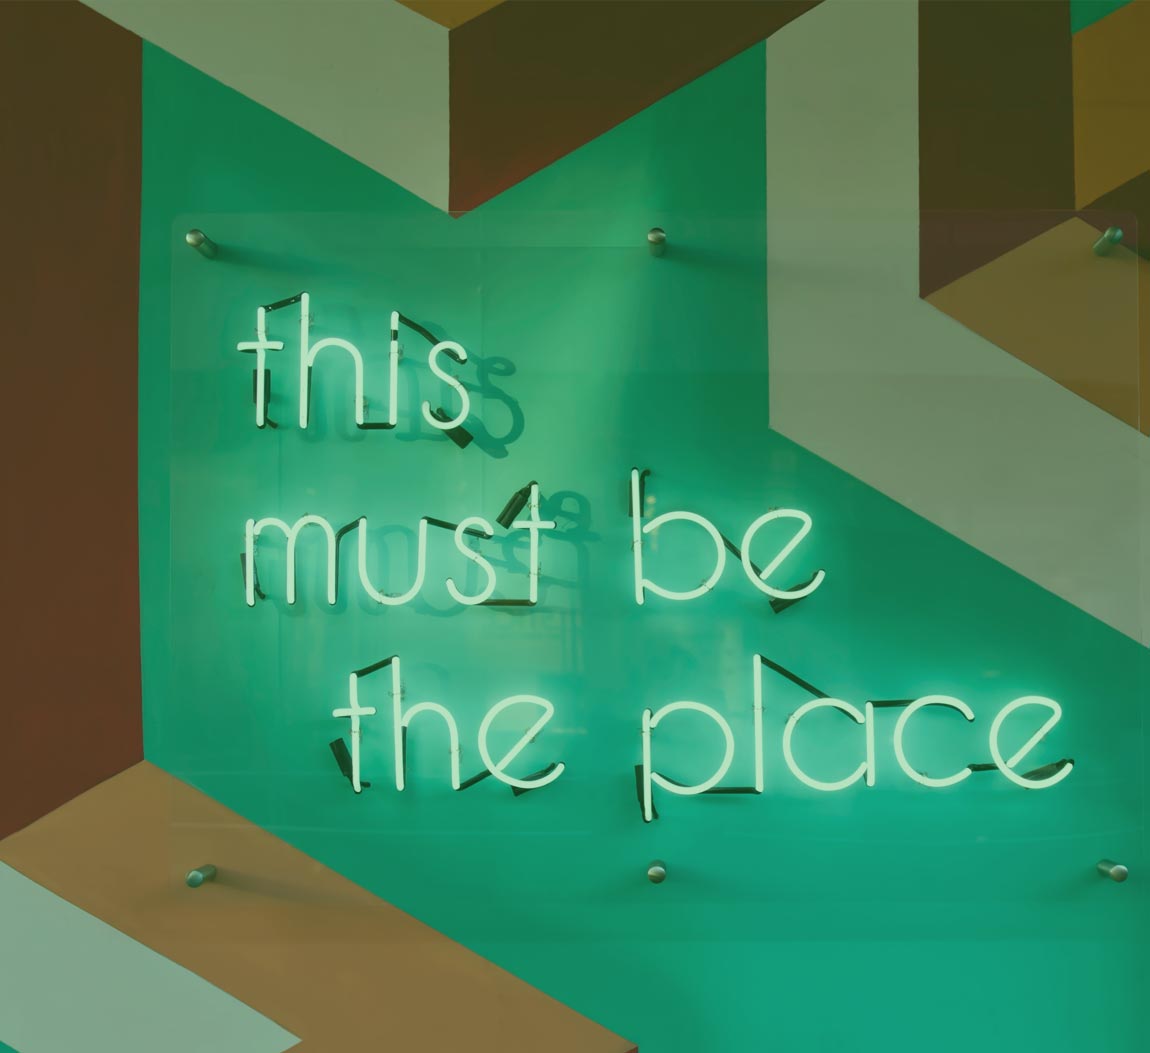 Panneaux lumineux avec "This must be the place" inscrit